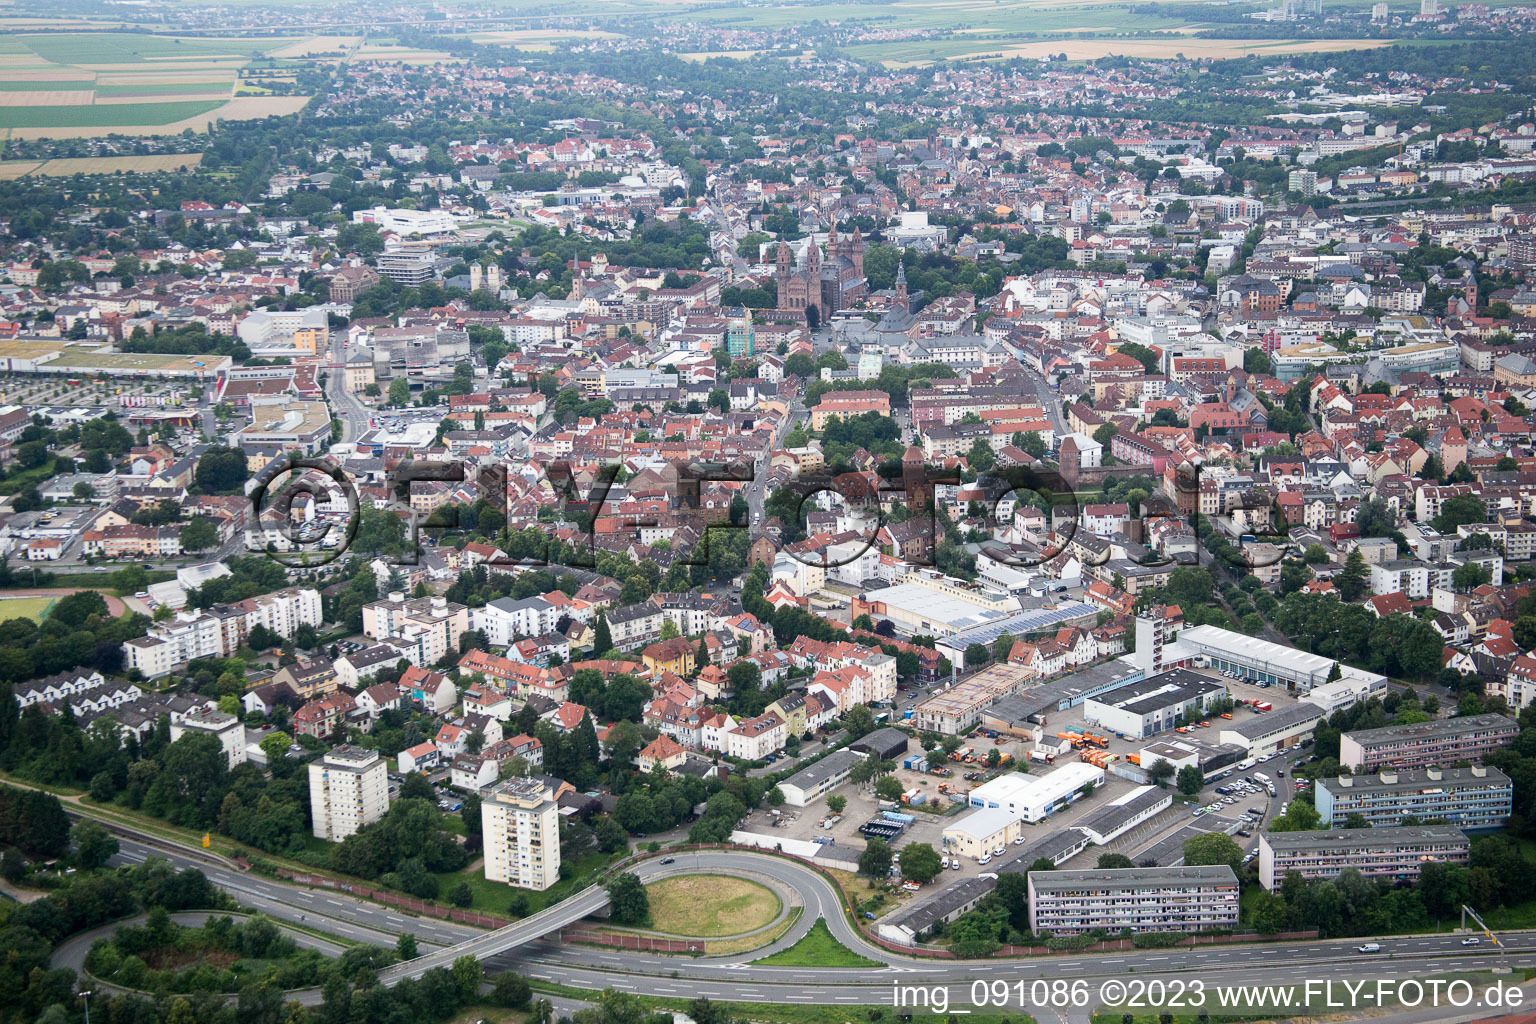 Worms im Bundesland Rheinland-Pfalz, Deutschland aus der Drohnenperspektive